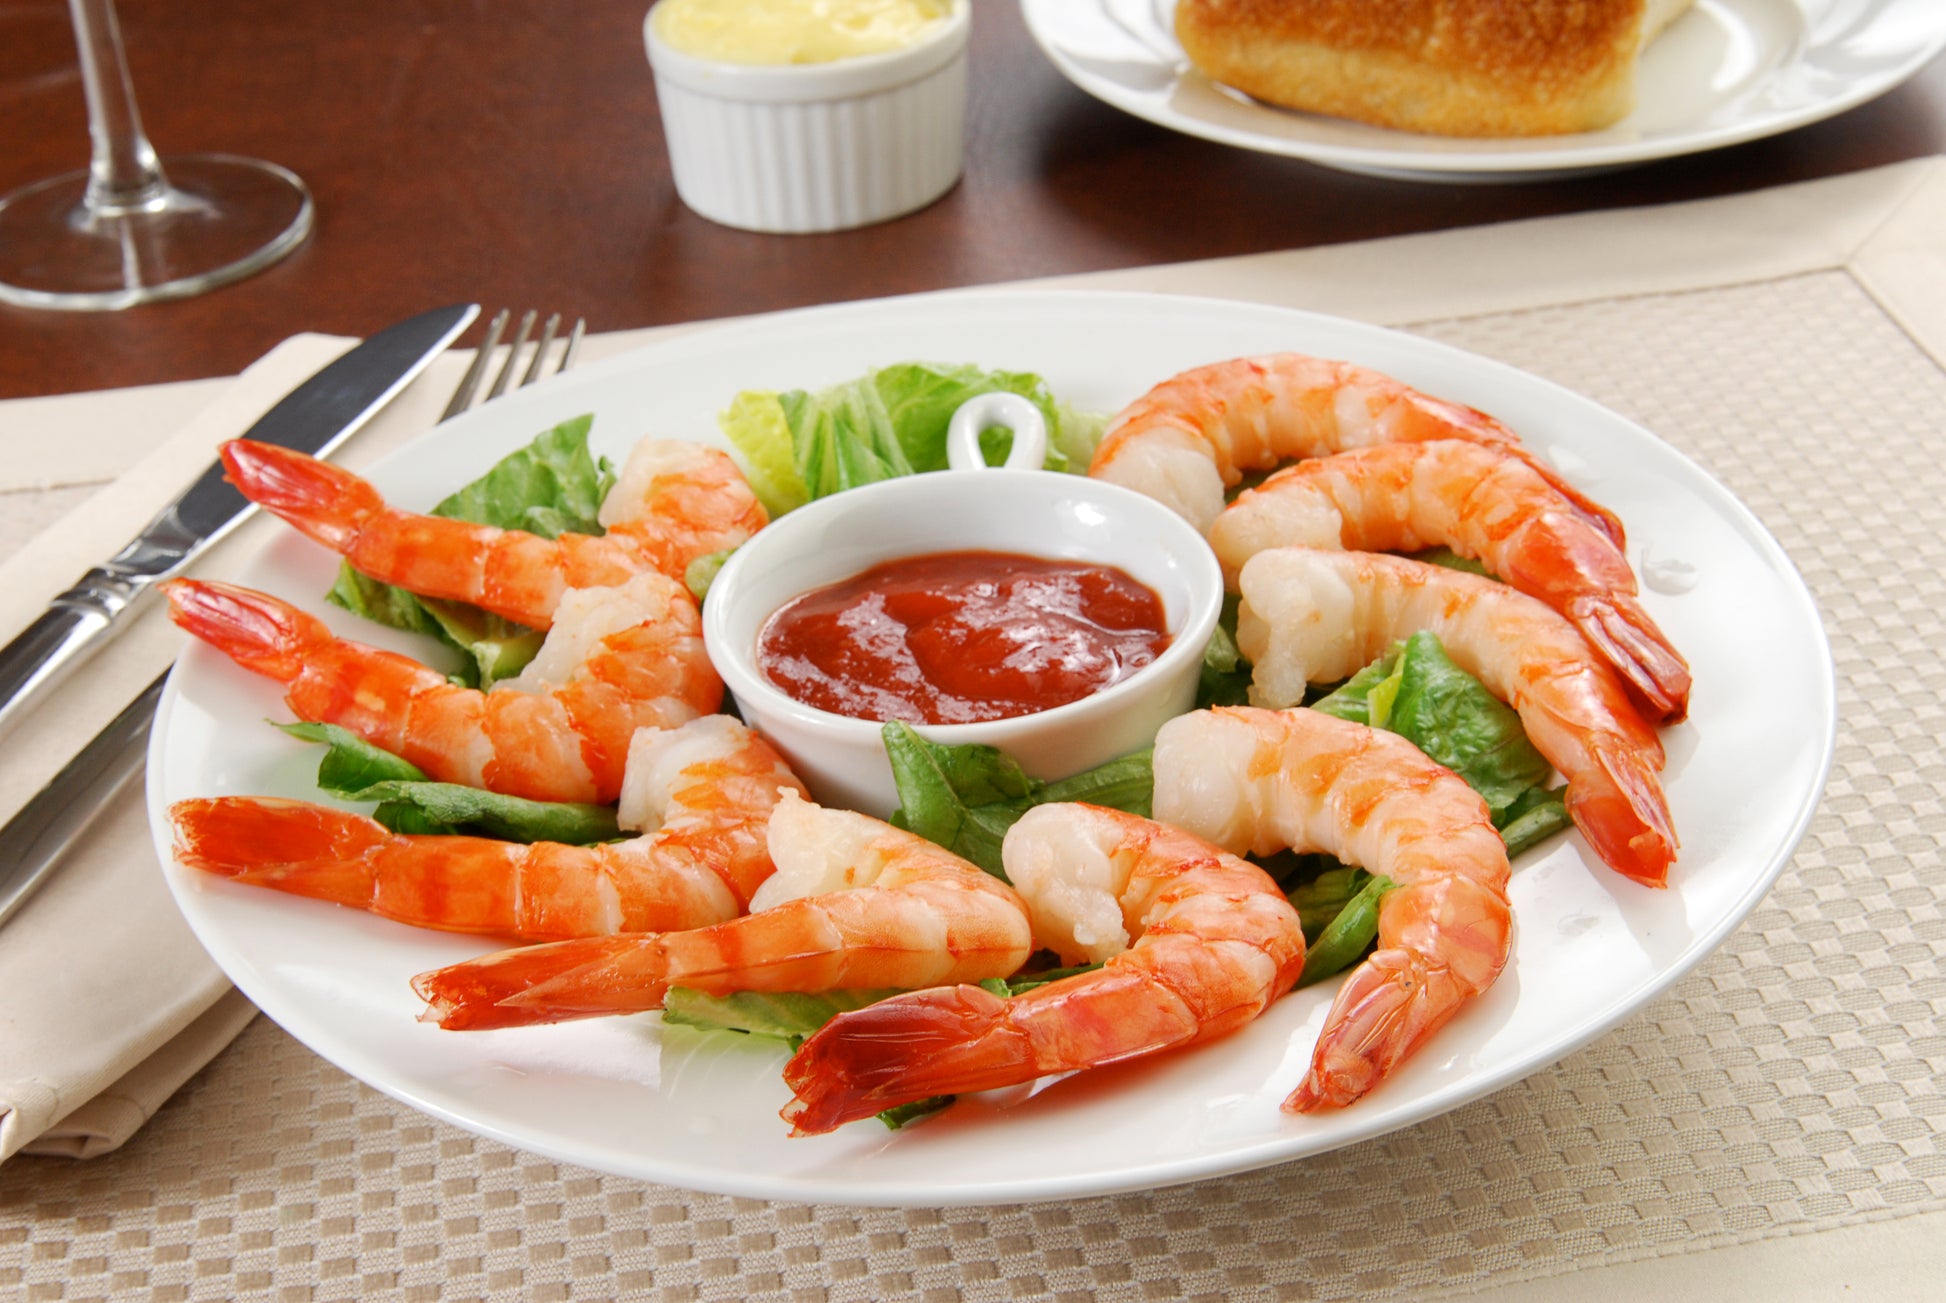 Jumbo Shrimp, Cooked Shrimp, Buy Shrimp